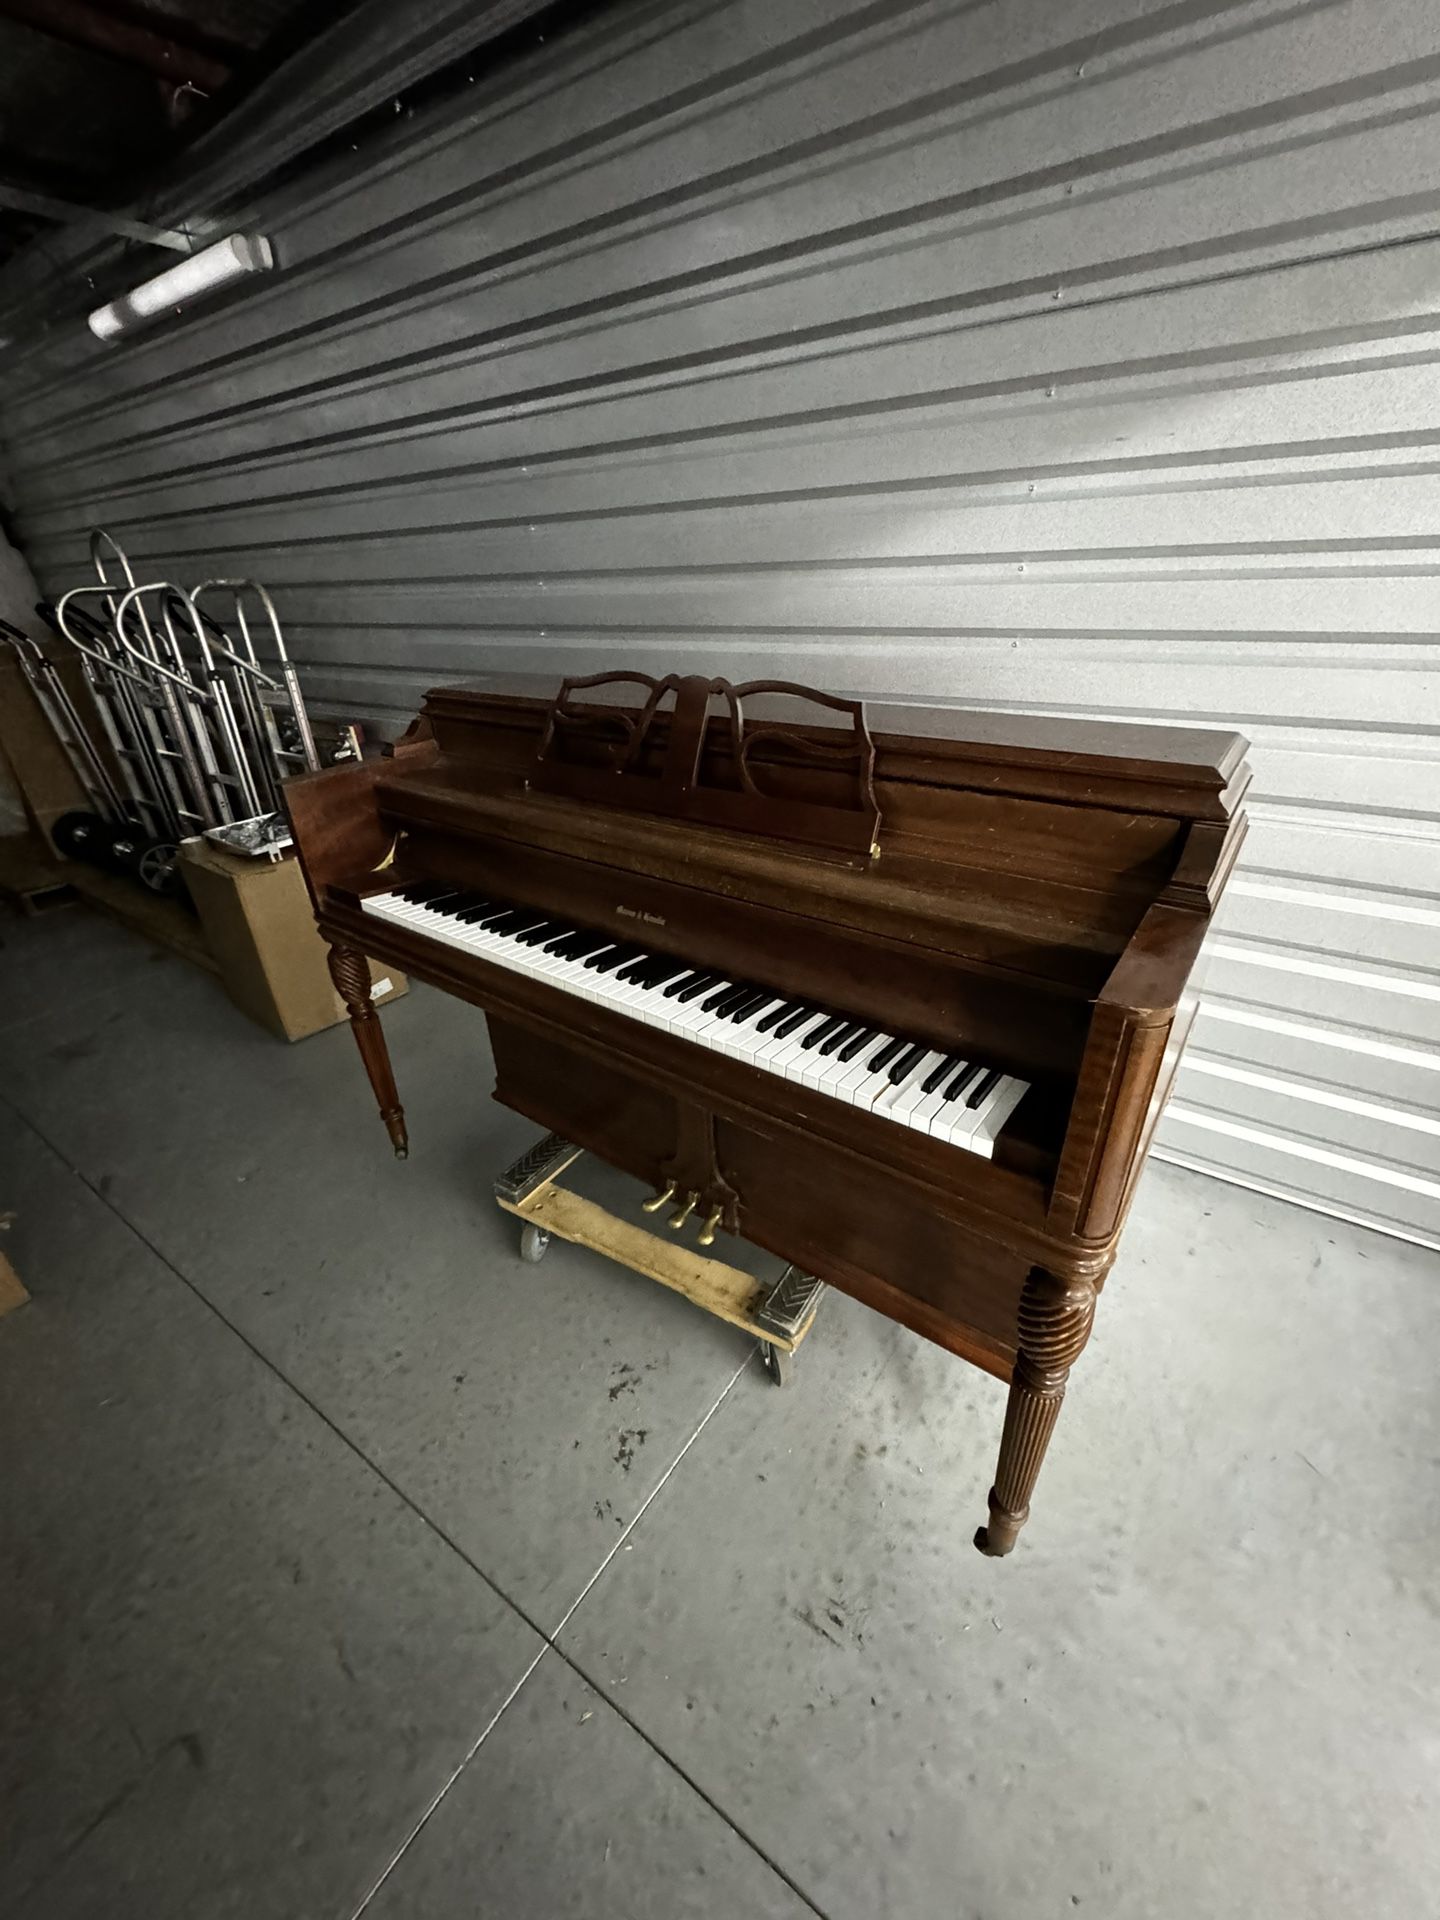 Mason & Hamlin Upright Piano MT 81320 [Delivery Available]